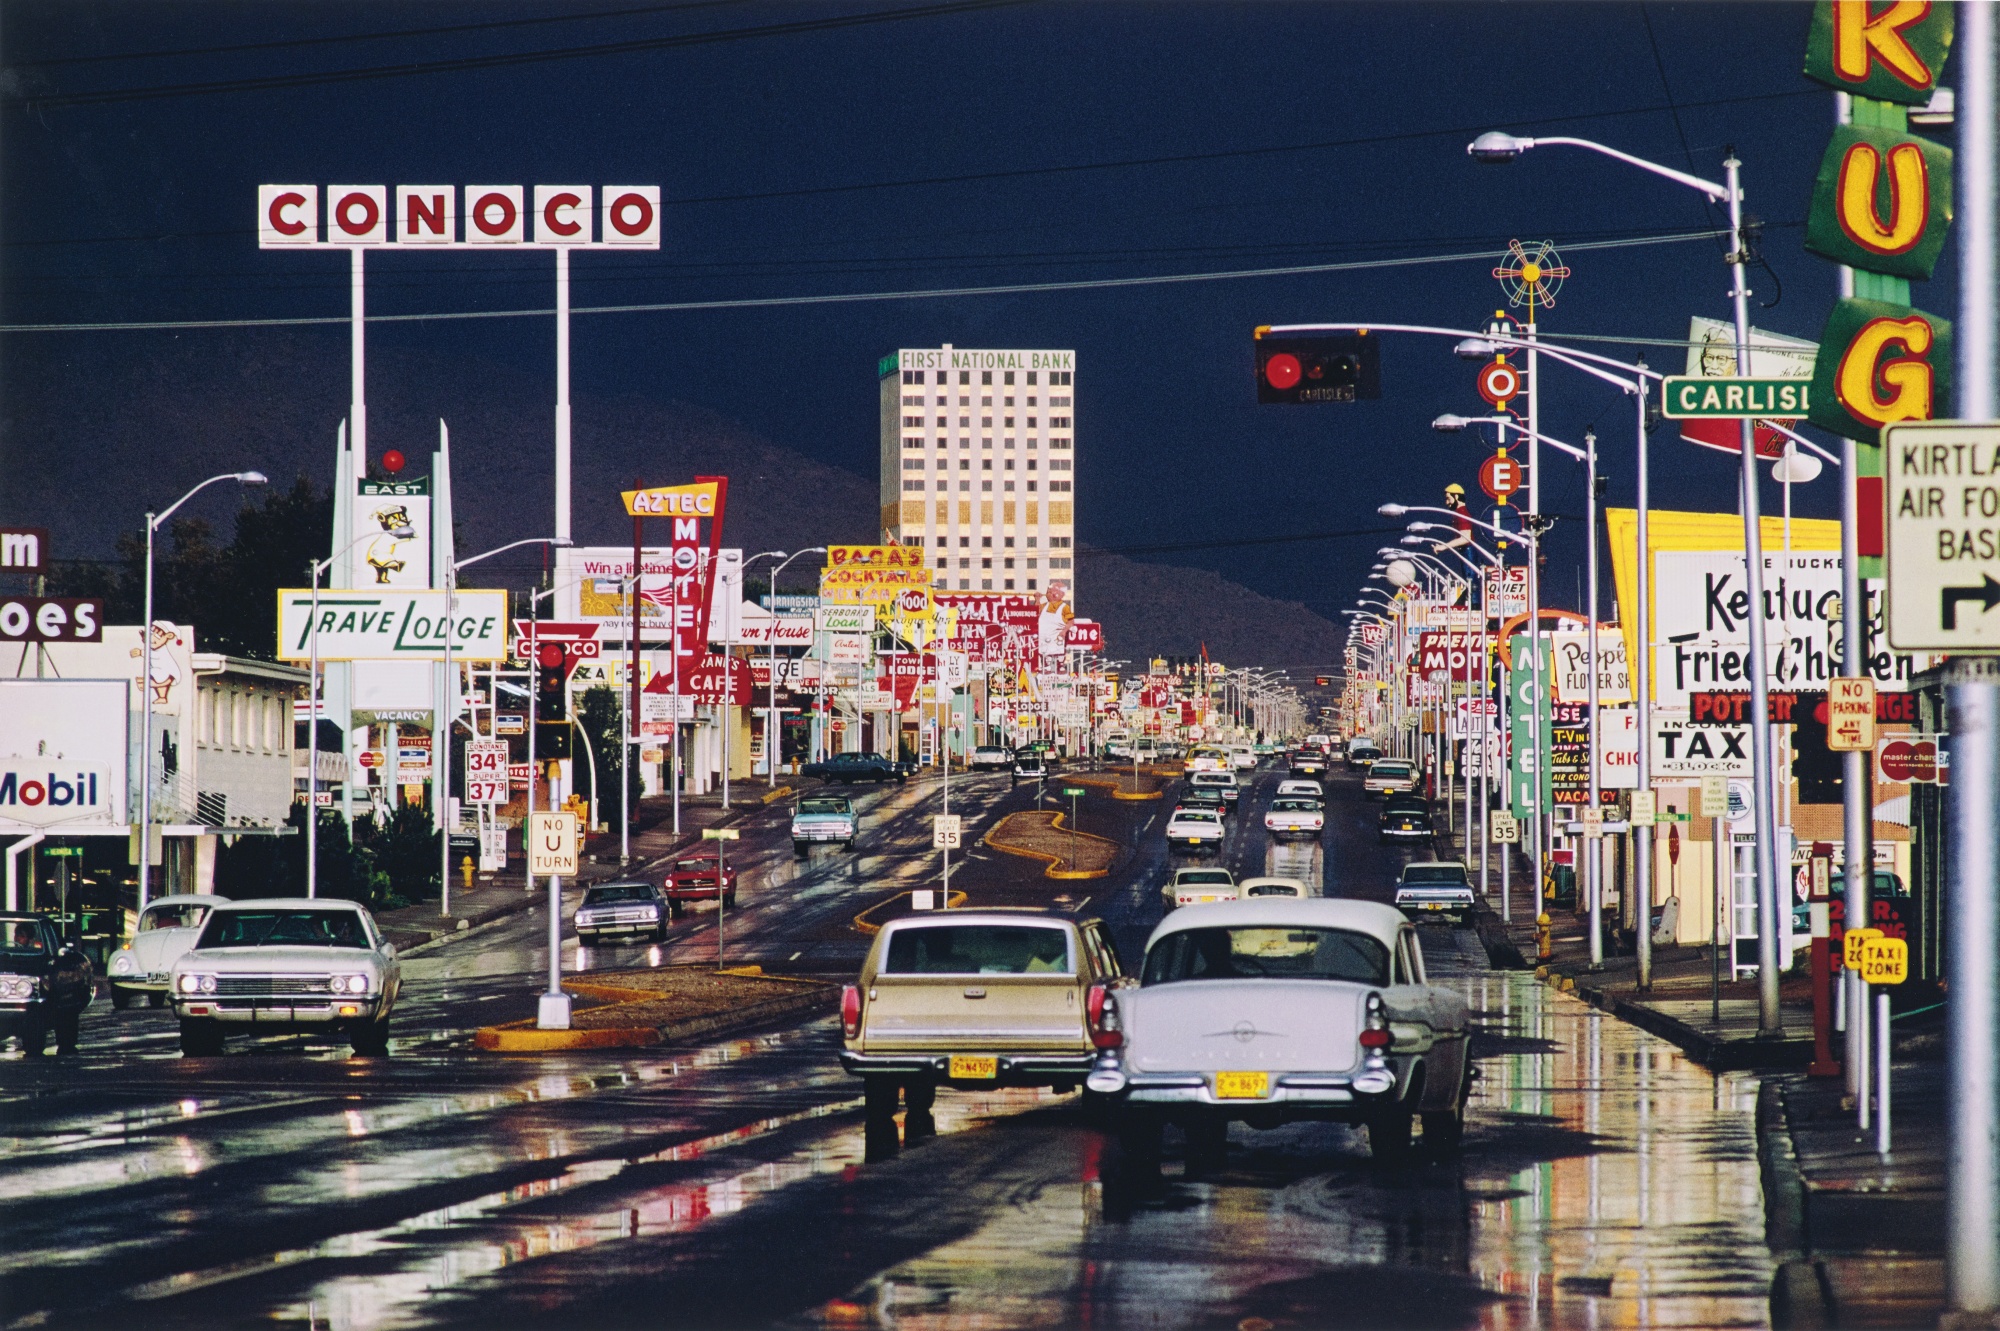 Route 66, Albuquerque, New Mexico, 1969